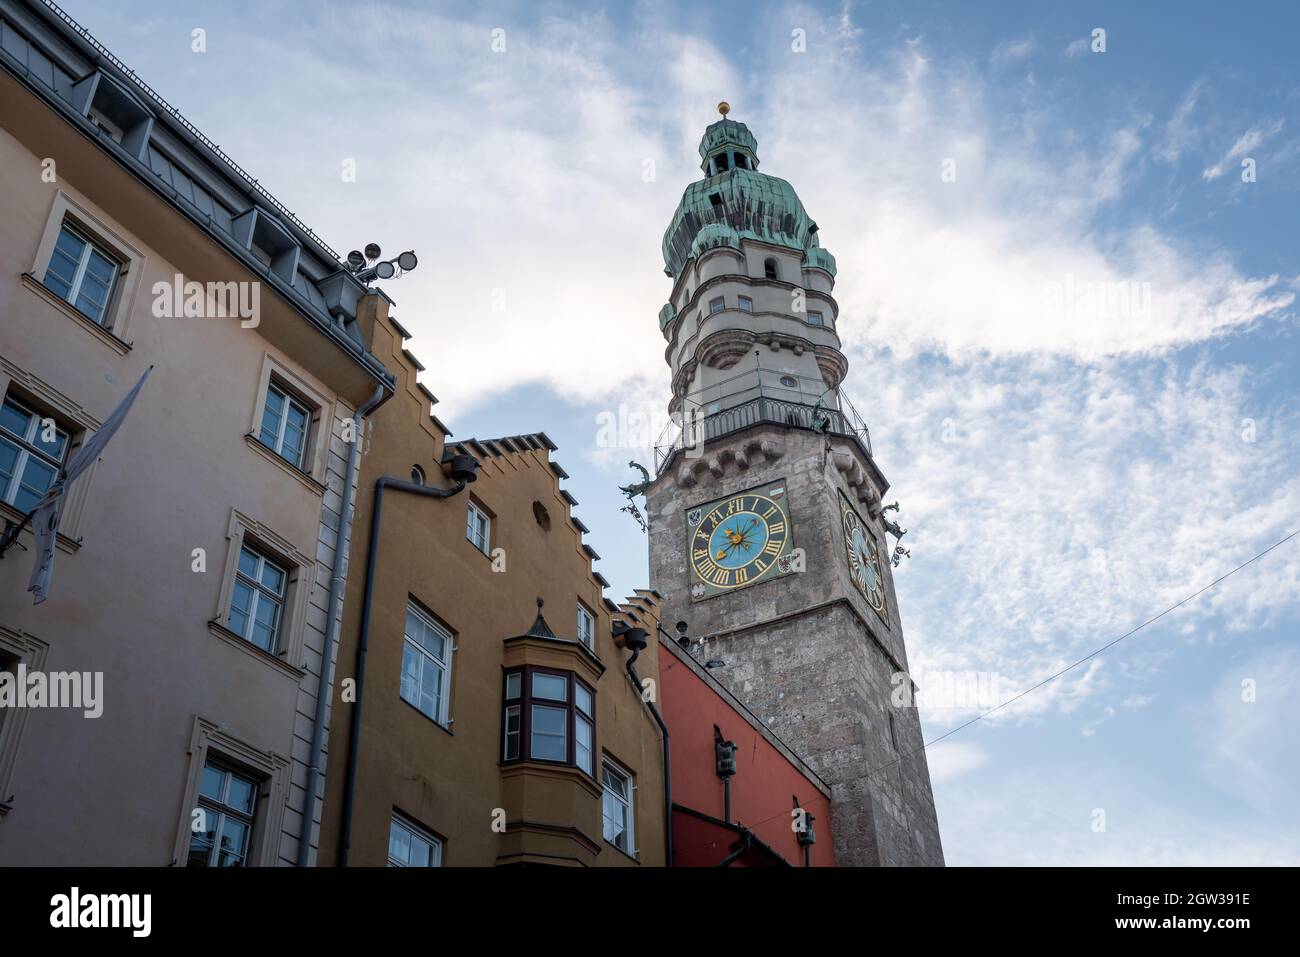 Tour de ville d'Innsbruck (partie de l'ancien hôtel de ville) - Innsbruck, Tyrol, Autriche Banque D'Images